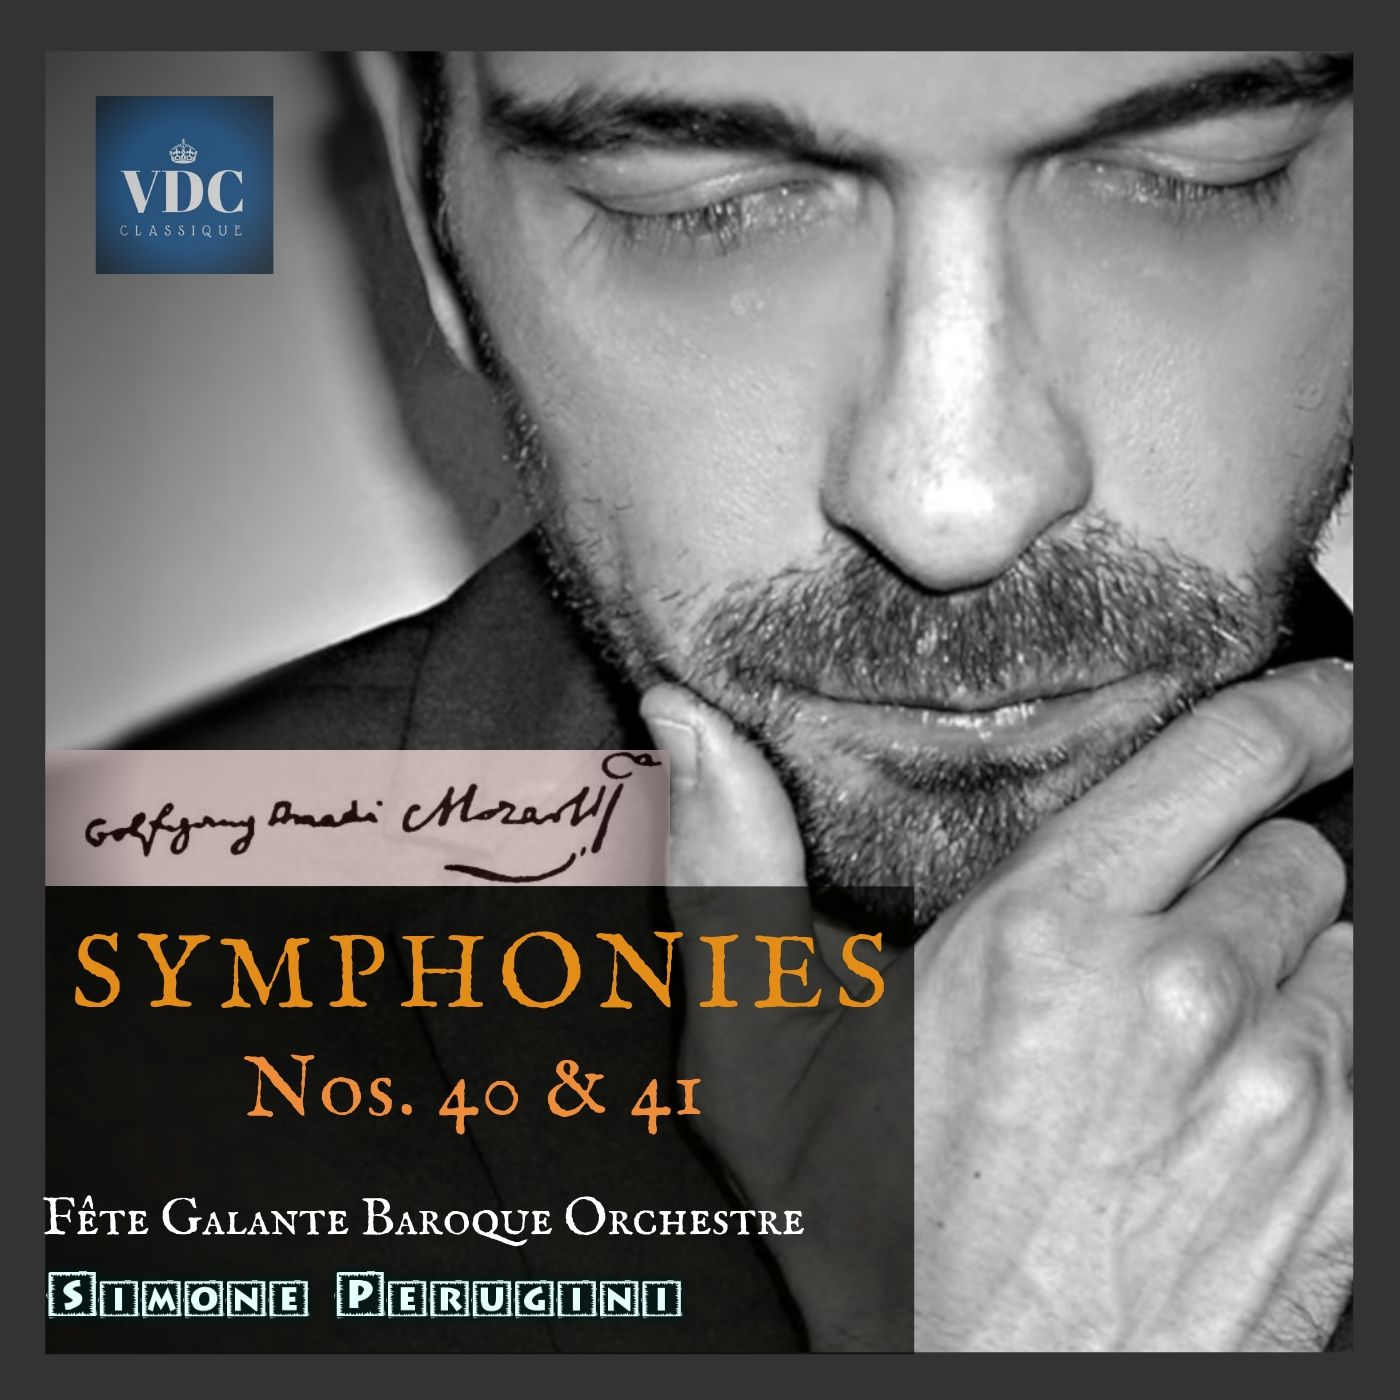 Foto 1 - Le ultime due sinfonie di Mozart in una nuova produzione discografica